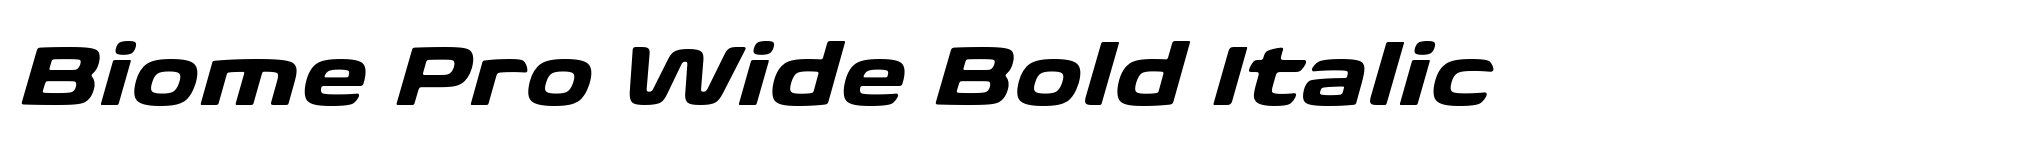 Biome Pro Wide Bold Italic image